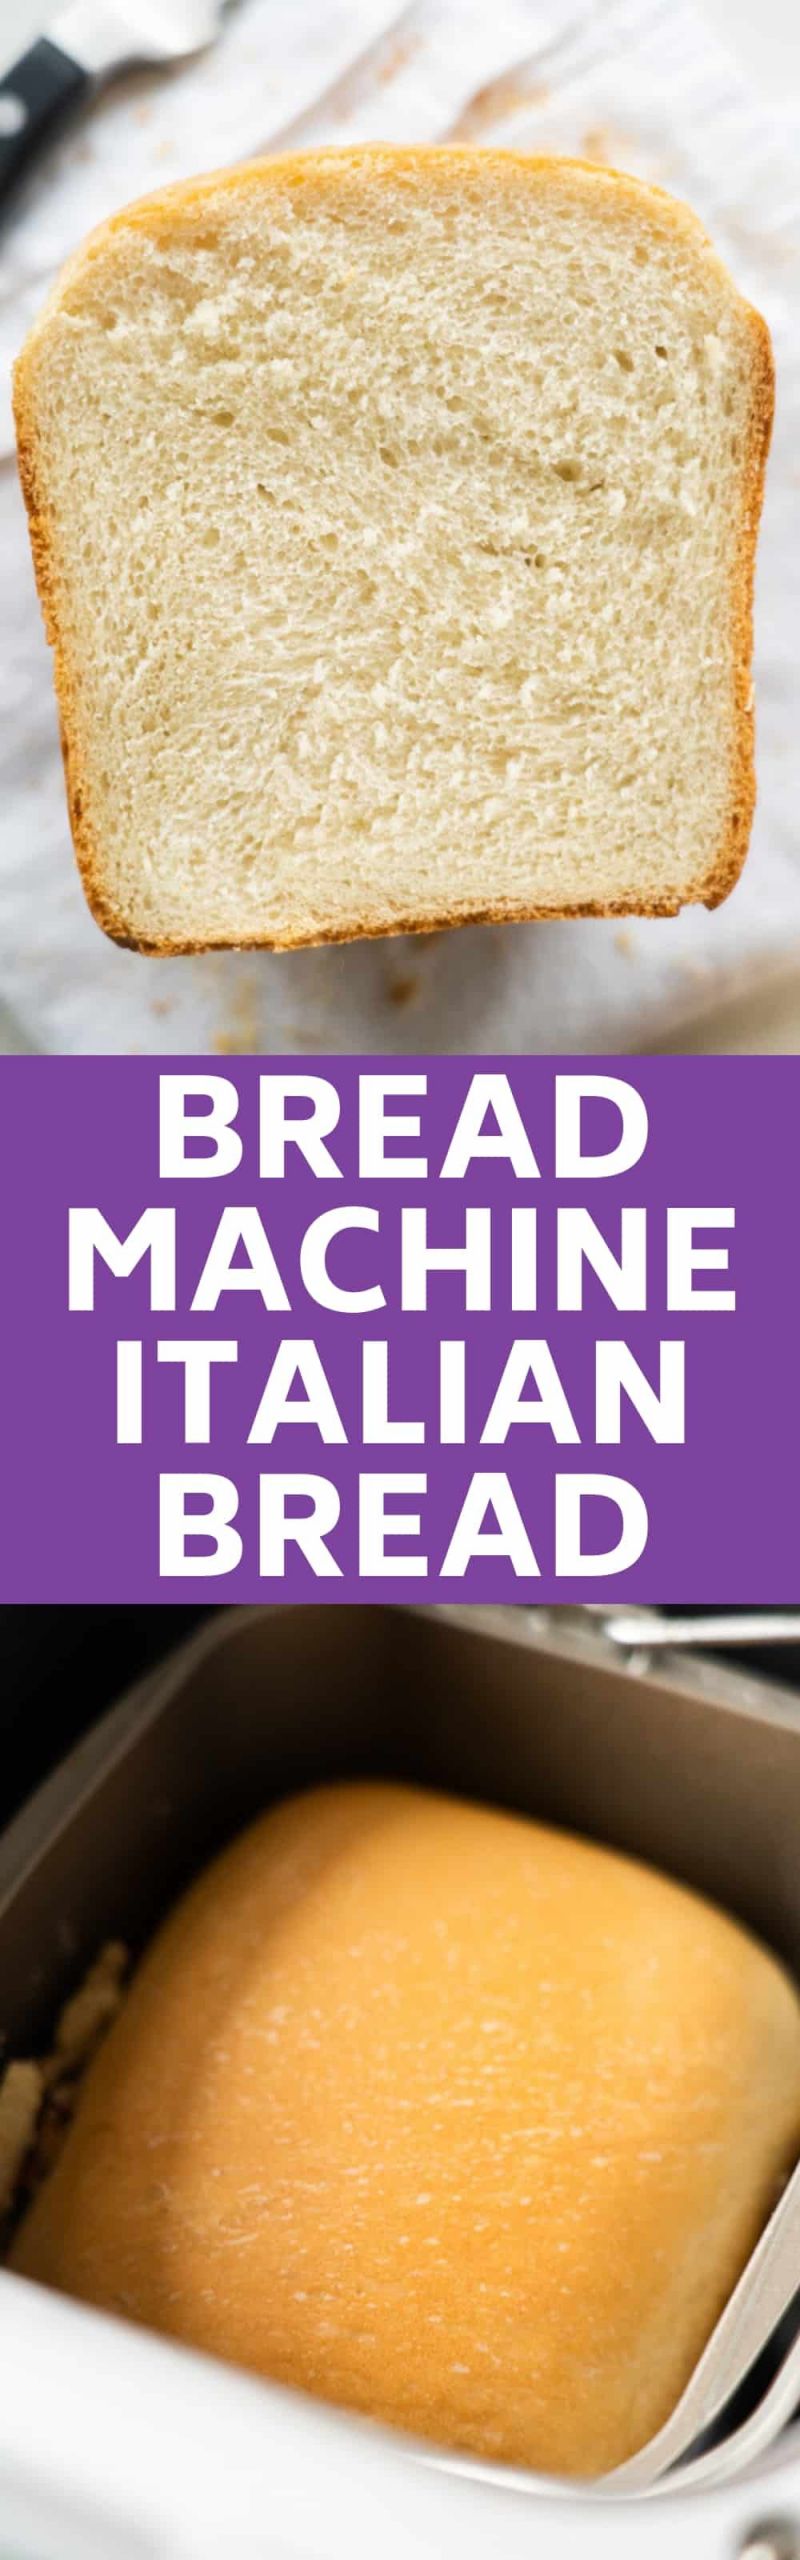 Italian Bread Recipe Bread Machine
 Bread Machine Italian Bread Easy Homemade Bread Recipe